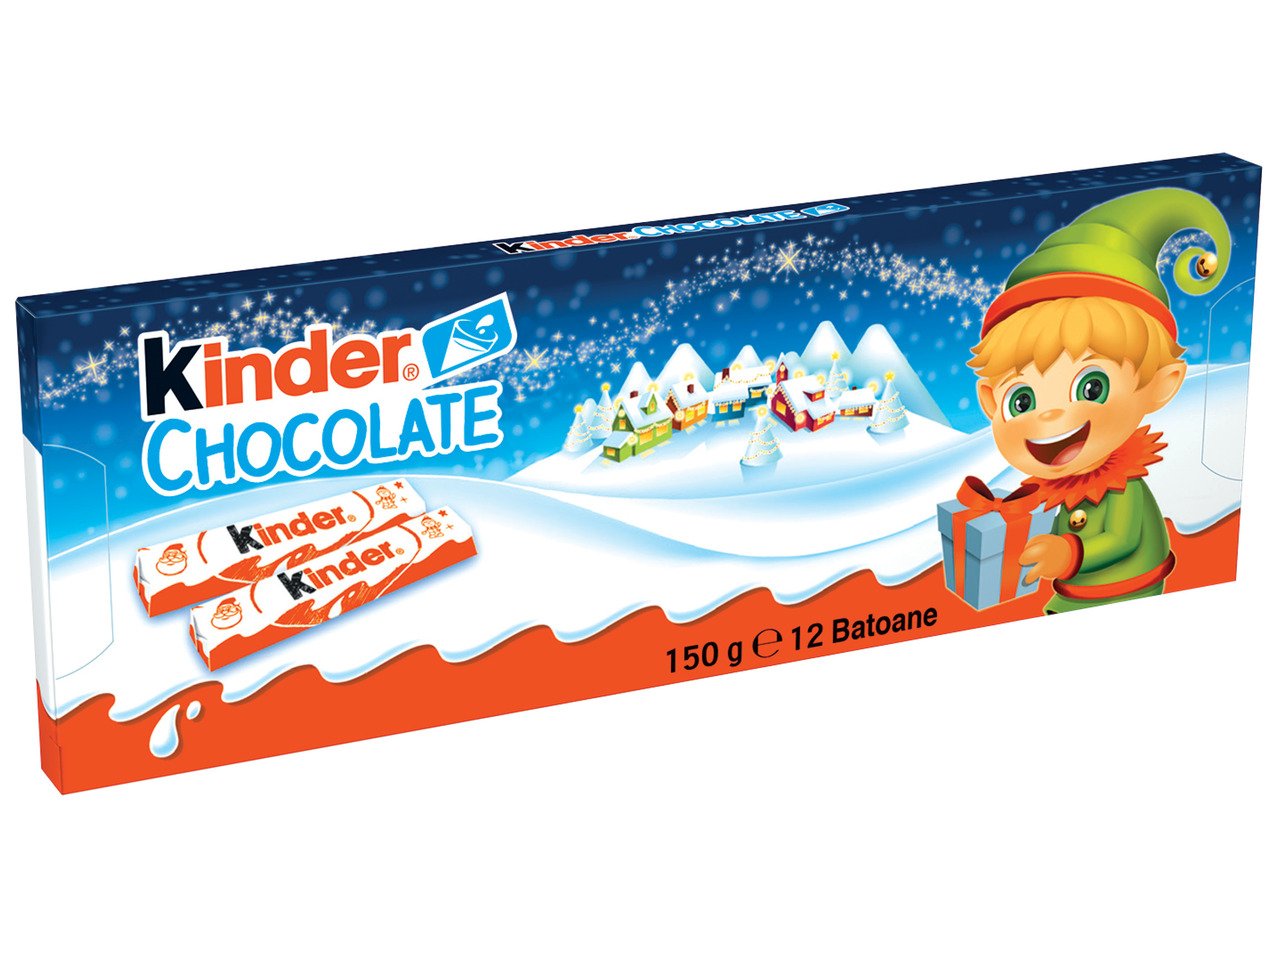 Kinder Шоколад